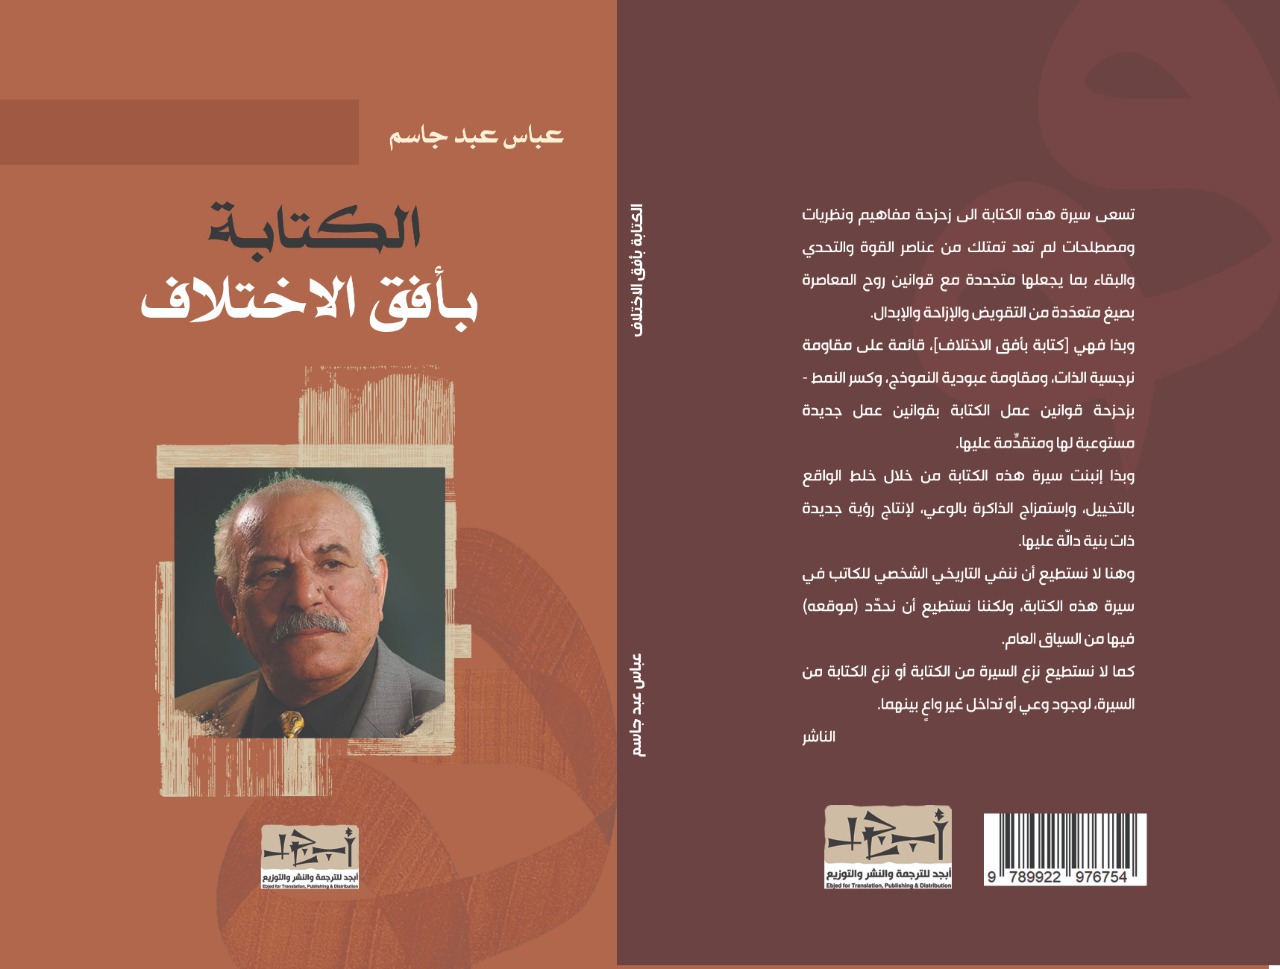 اسم الكتاب: الكتابة بأفق الاختلاف تأليف: عباس عبد جاسم